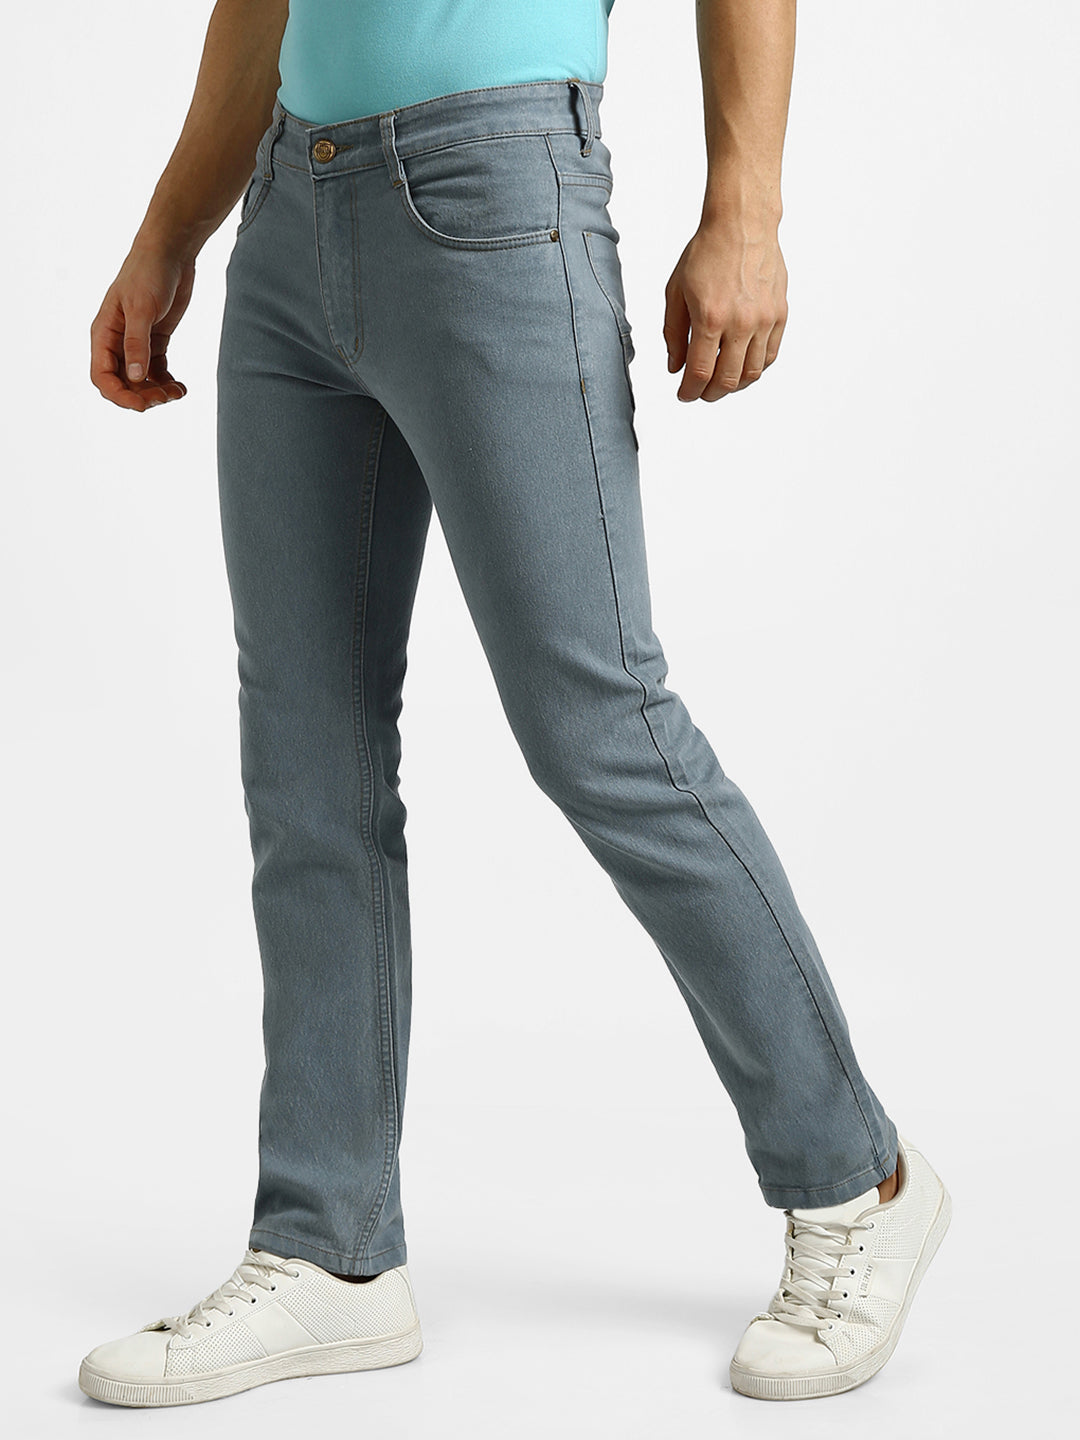 Men's Light Grey Regular Fit Washed Jeans Stretchable